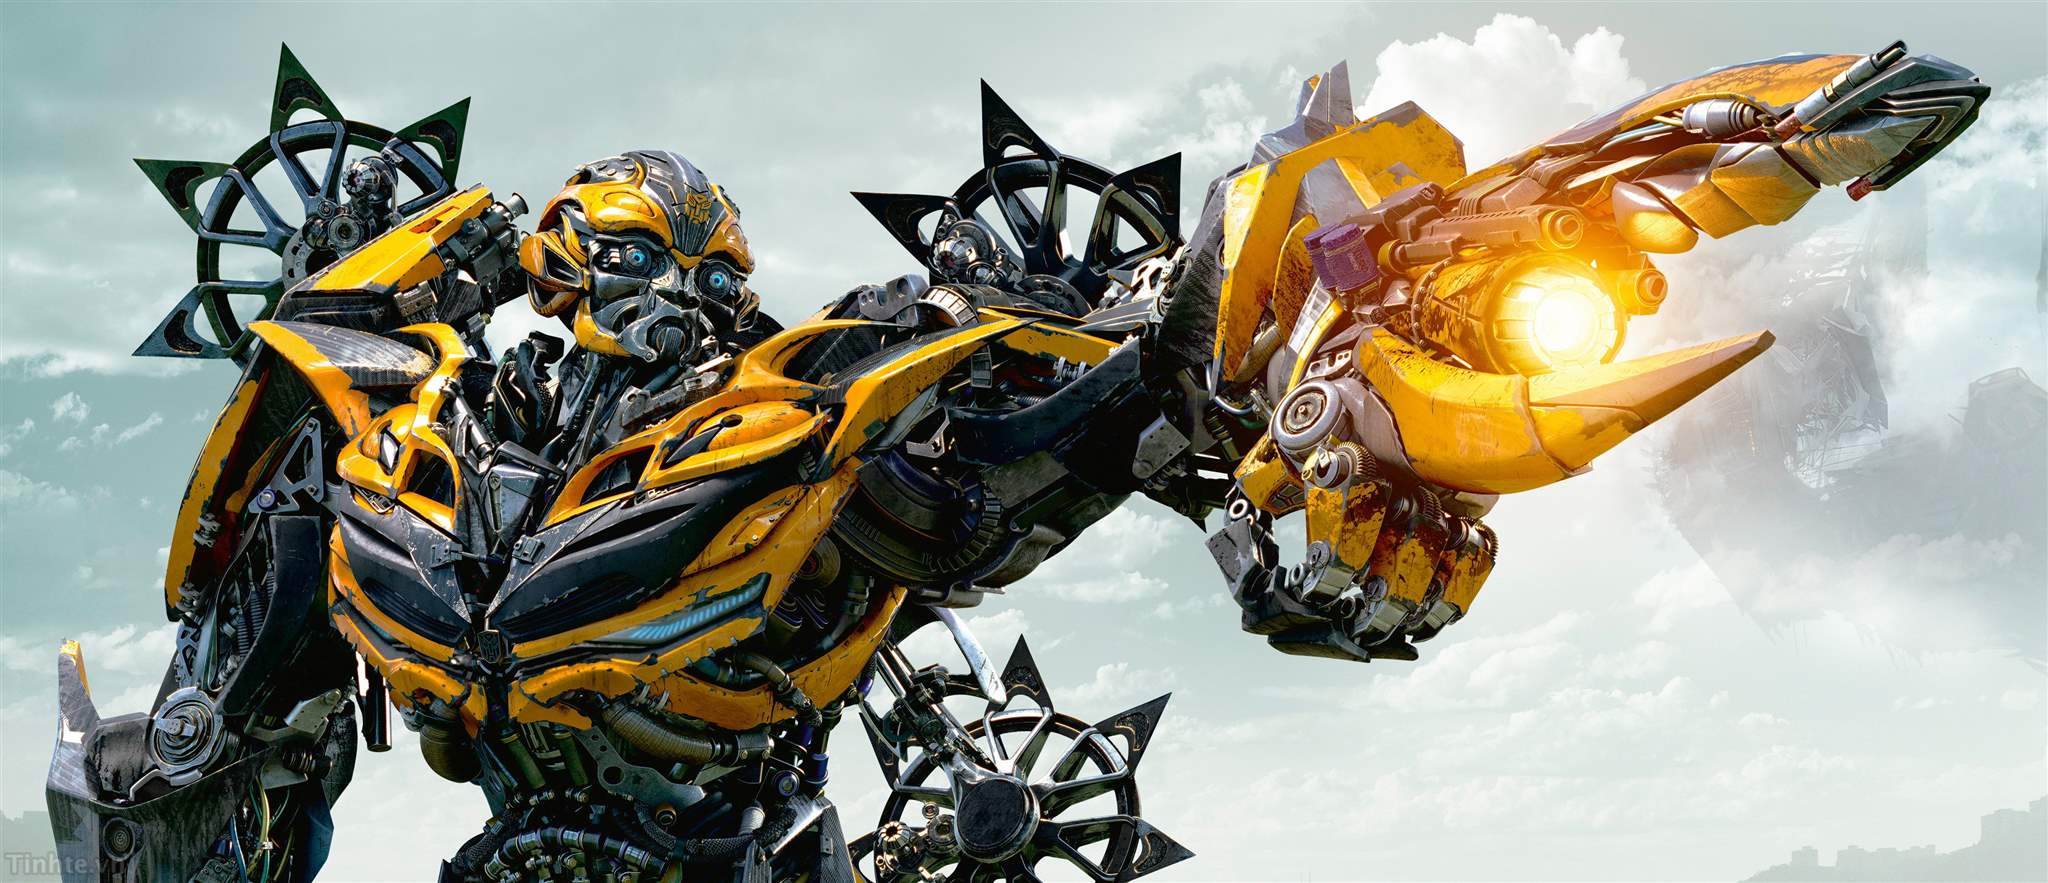 Autobot: Với kẻ thù là Decepticon, những chiếc xe siêu năng lượng Autobot đã trở thành biểu tượng không thể thiếu trong loạt phim hành động pha lẫn kịch tính của Transformers. Bạn sẽ được chiêm ngưỡng sự trung thành, sức mạnh và tinh thần đoàn kết của Autobot trong các trận chiến đầy áp lực trên màn ảnh rộng.